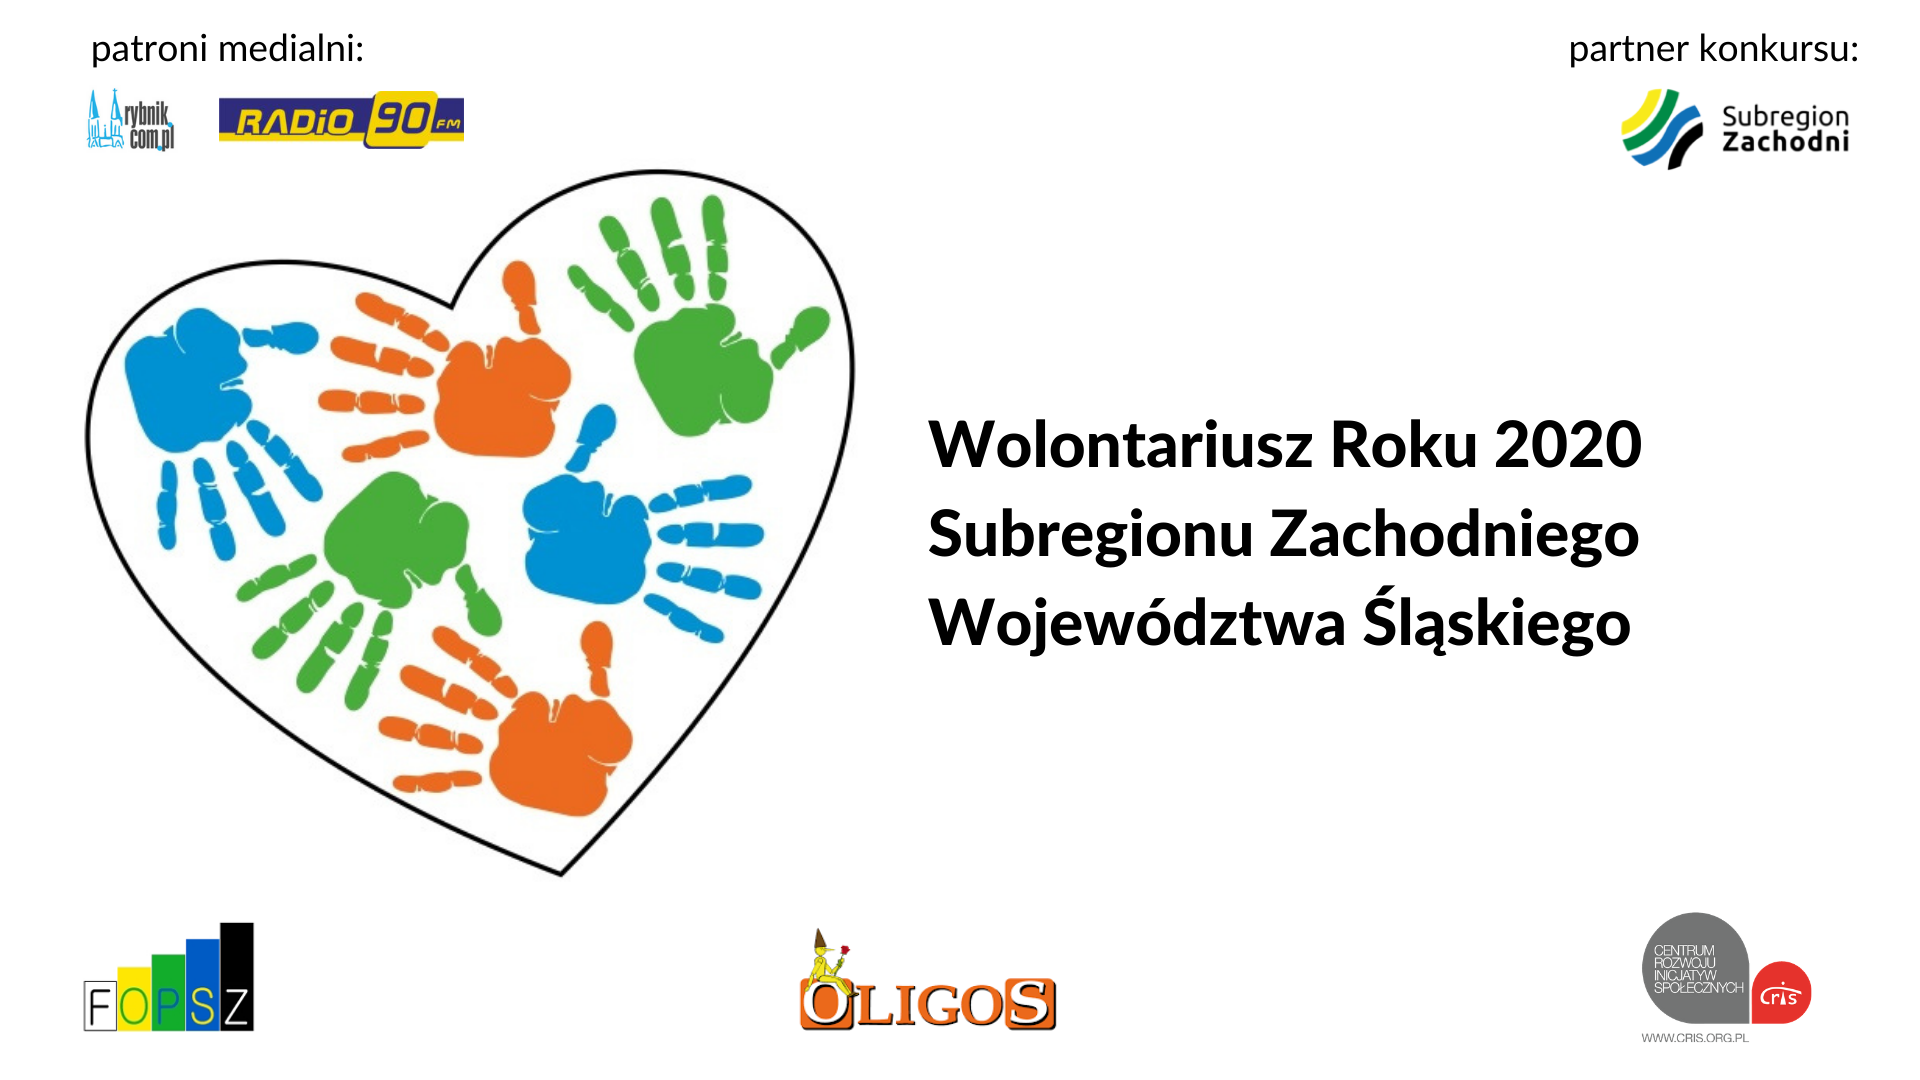 Wolontariusz Roku 2020 Subregionu Zachodniego Województwa Śląskiego